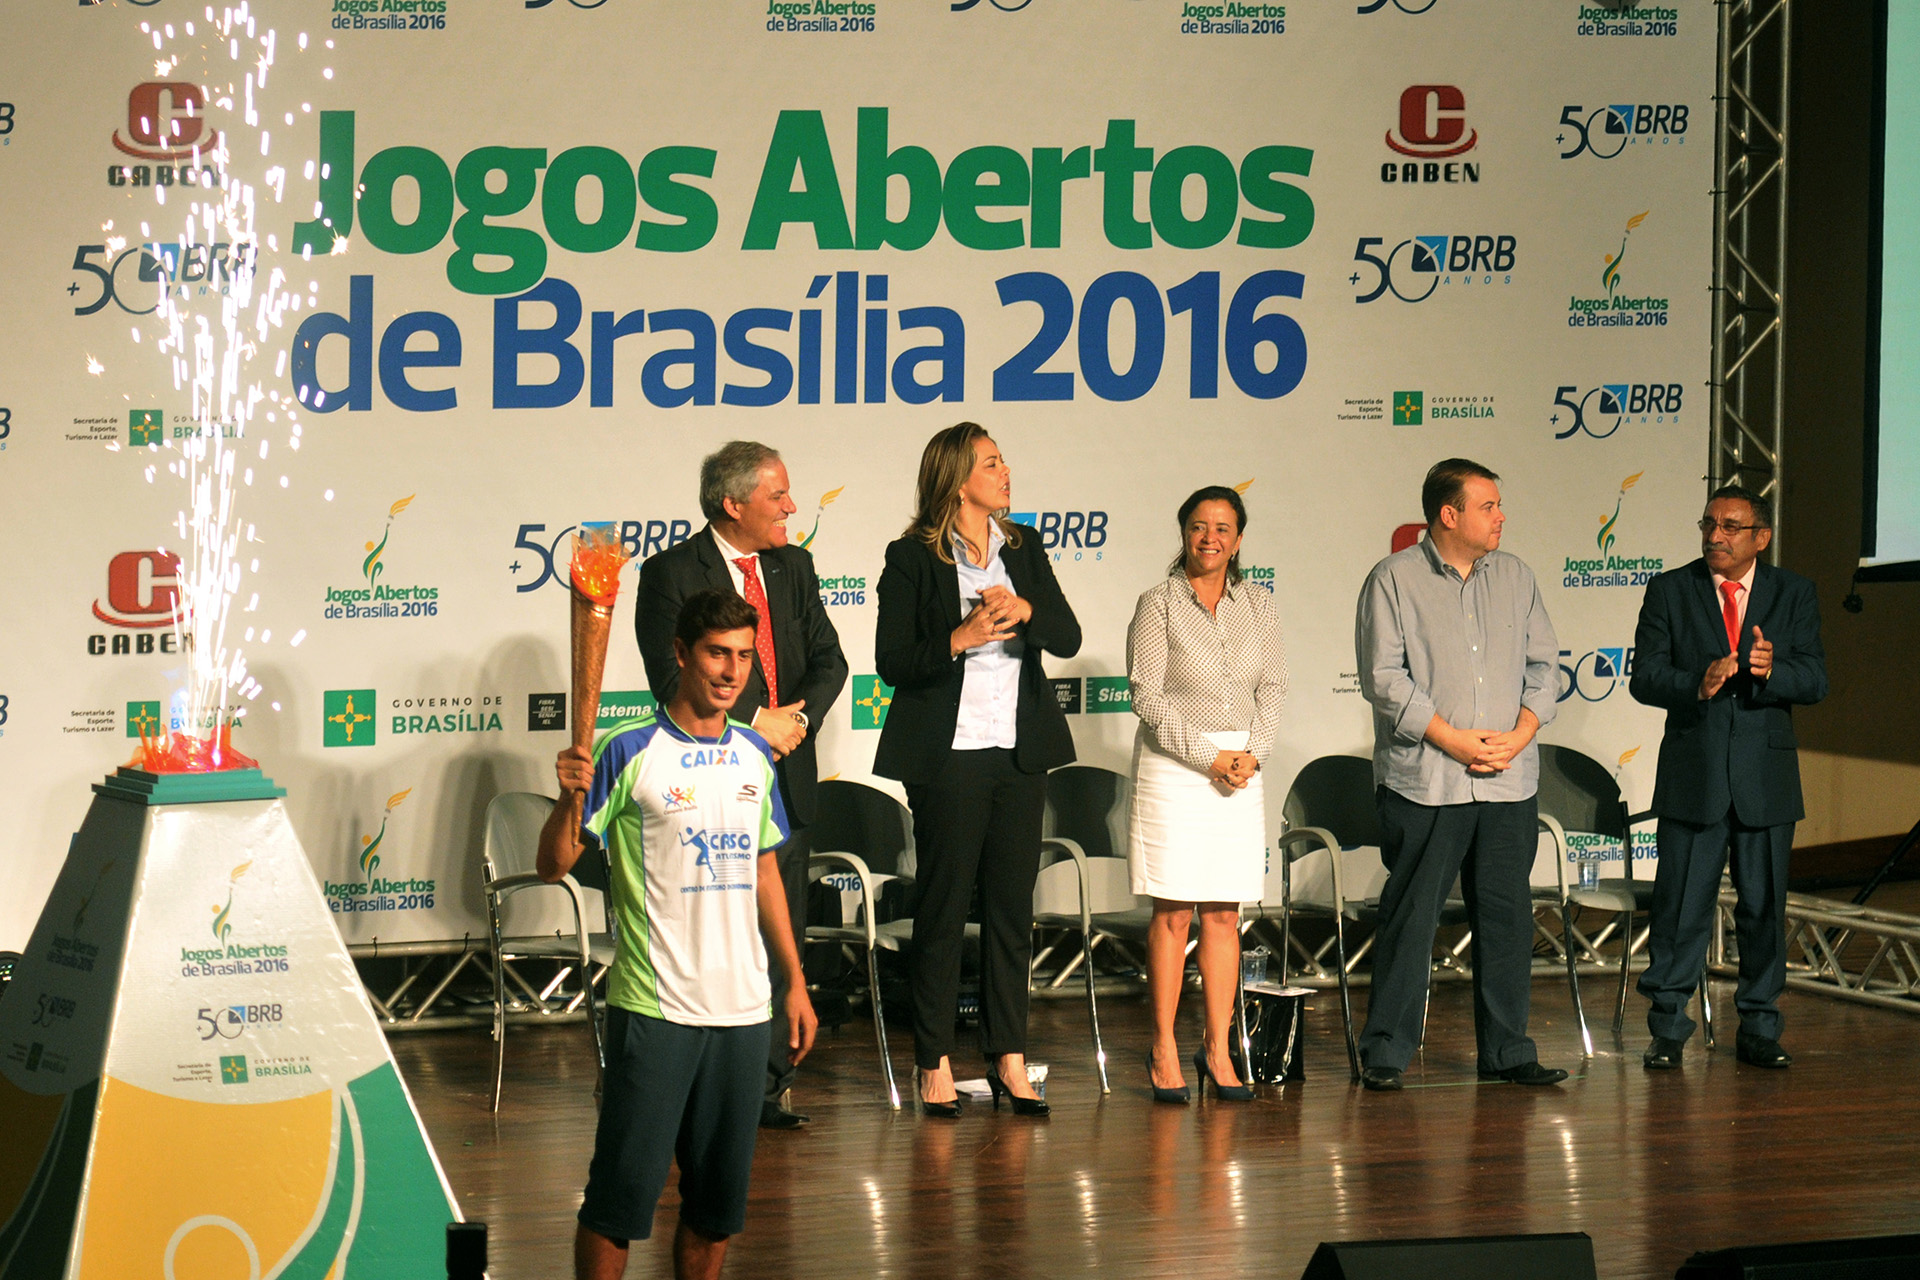 Na cerimônia, o atleta brasiliense Caio Bonfim, quarto lugar na marcha atlética na Olimpíada Rio 2016, acendeu a pira dos jogos.